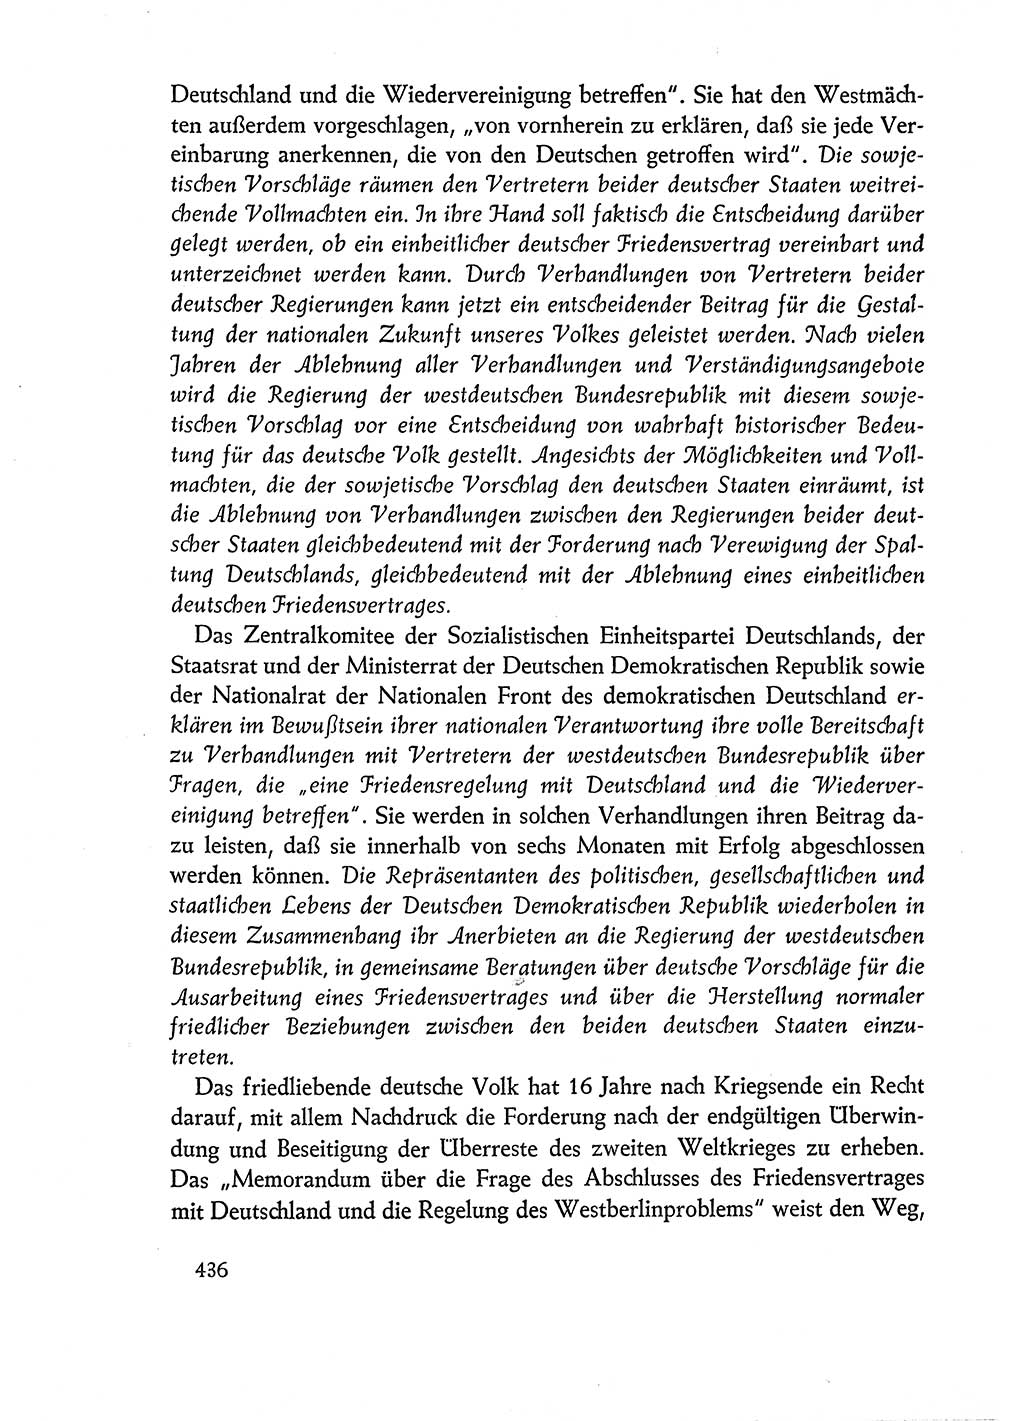 Dokumente der Sozialistischen Einheitspartei Deutschlands (SED) [Deutsche Demokratische Republik (DDR)] 1960-1961, Seite 436 (Dok. SED DDR 1960-1961, S. 436)